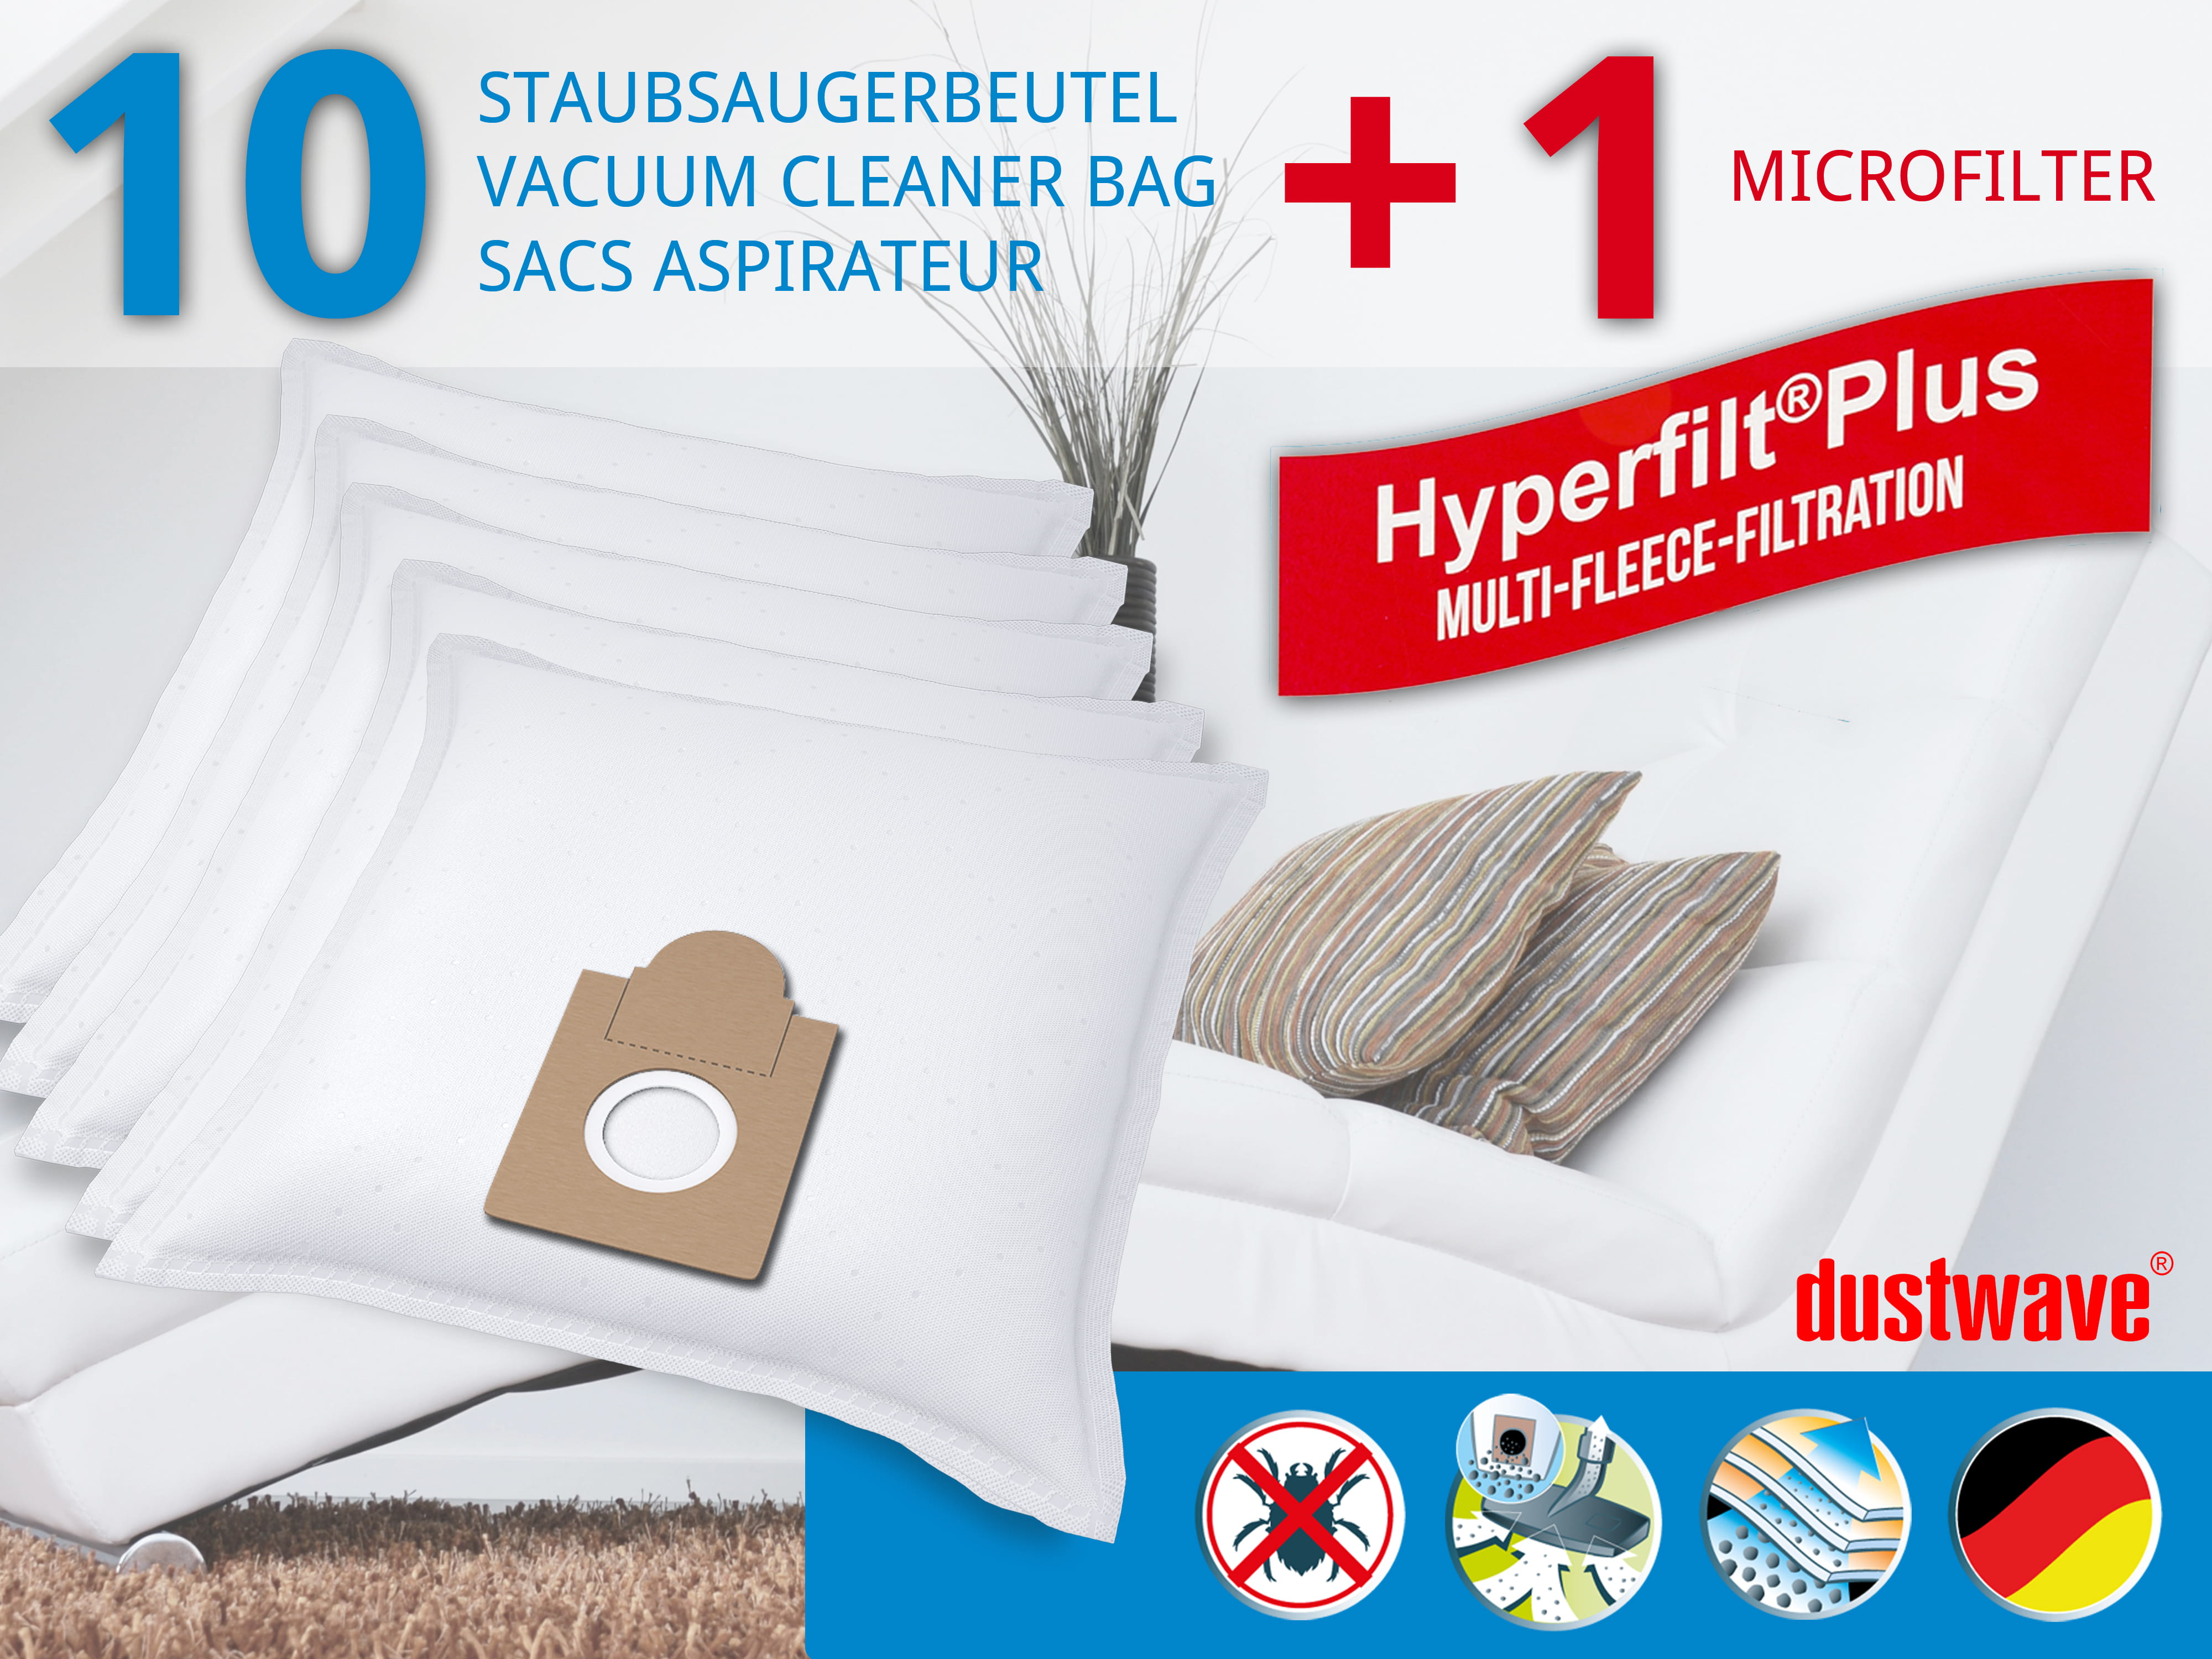 Dustwave® 10 Staubsaugerbeutel für AquaPur EO 800 - hocheffizient, mehrlagiges Mikrovlies mit Hygieneverschluss - Made in Germany